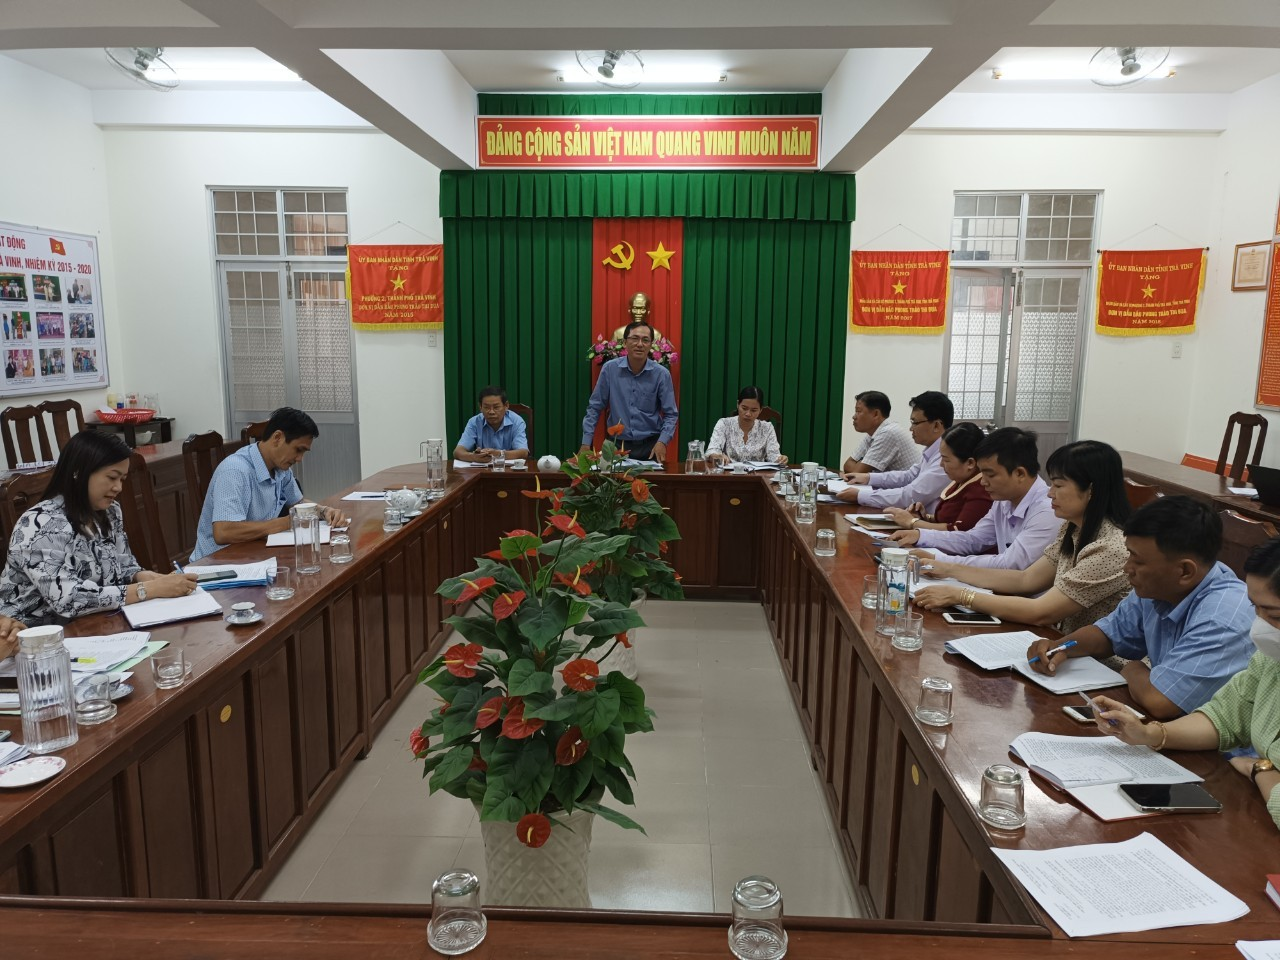 Đoàn giám sát Hội đồng Nhân dân Thành phố Trà Vinh đến giám sát việc thực hiện các tiêu chí Phường đạt chuẩn đô thị văn minh tại phường 2 và phường 3